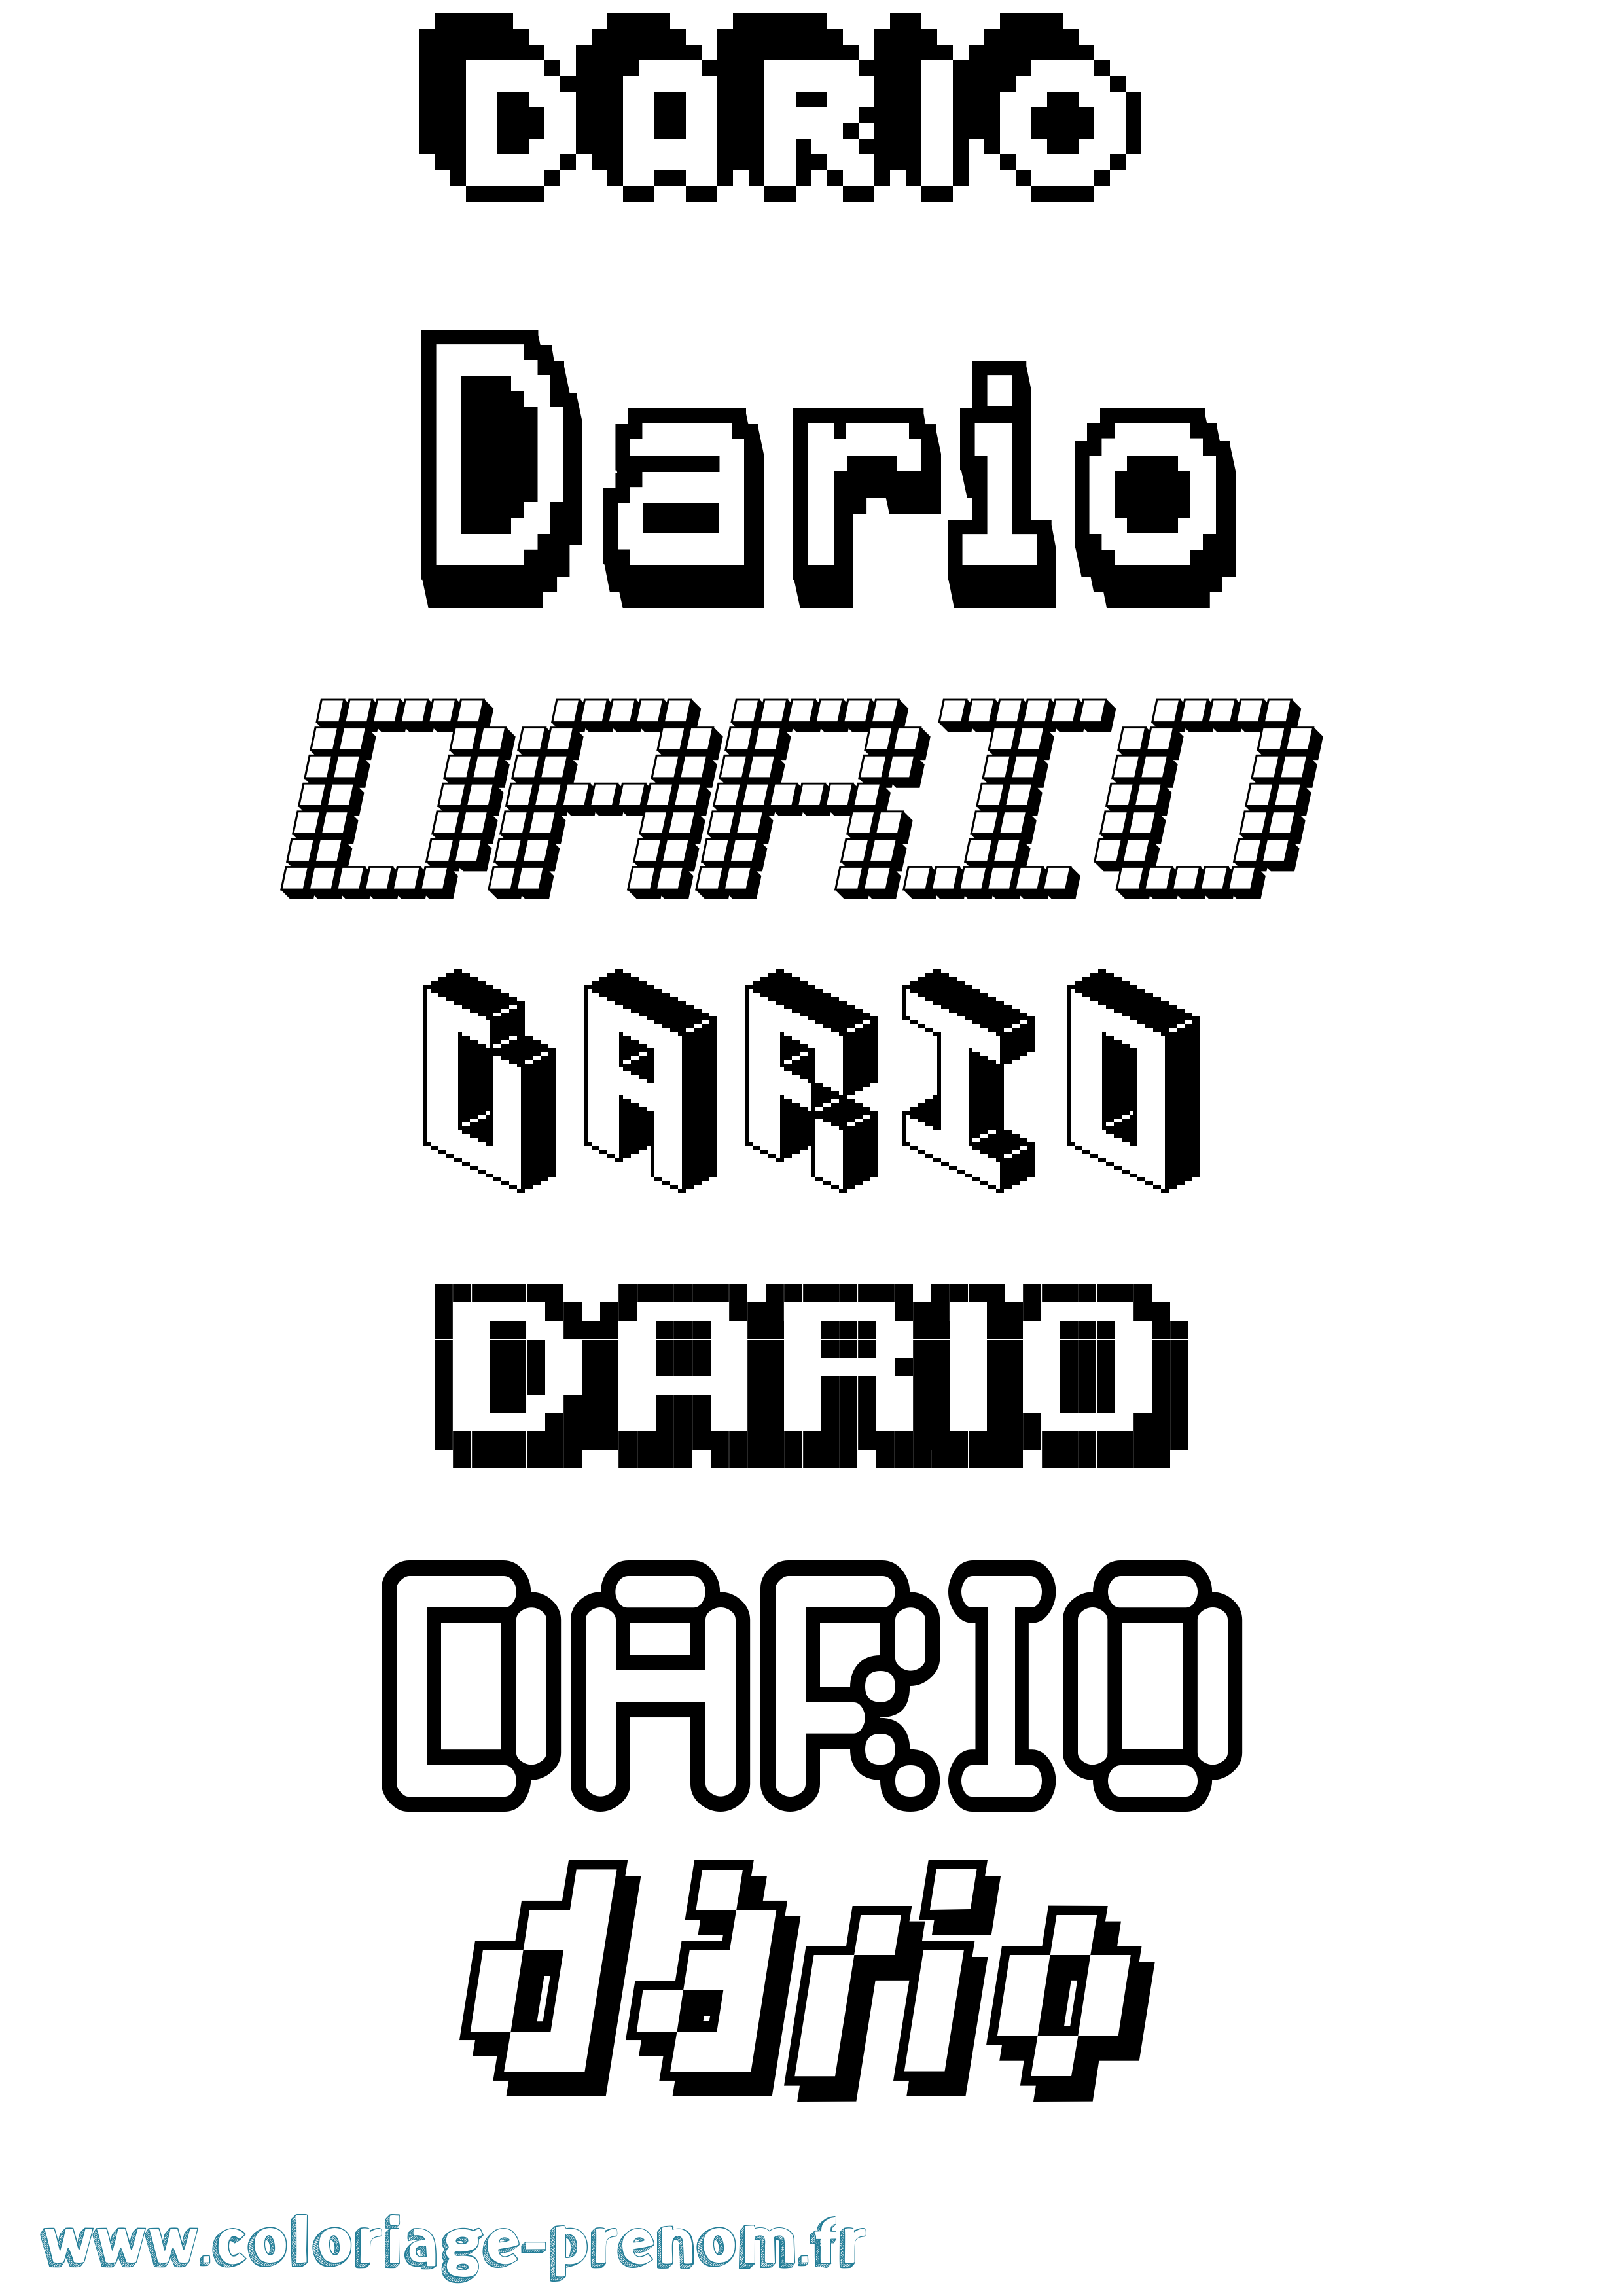 Coloriage prénom Dario